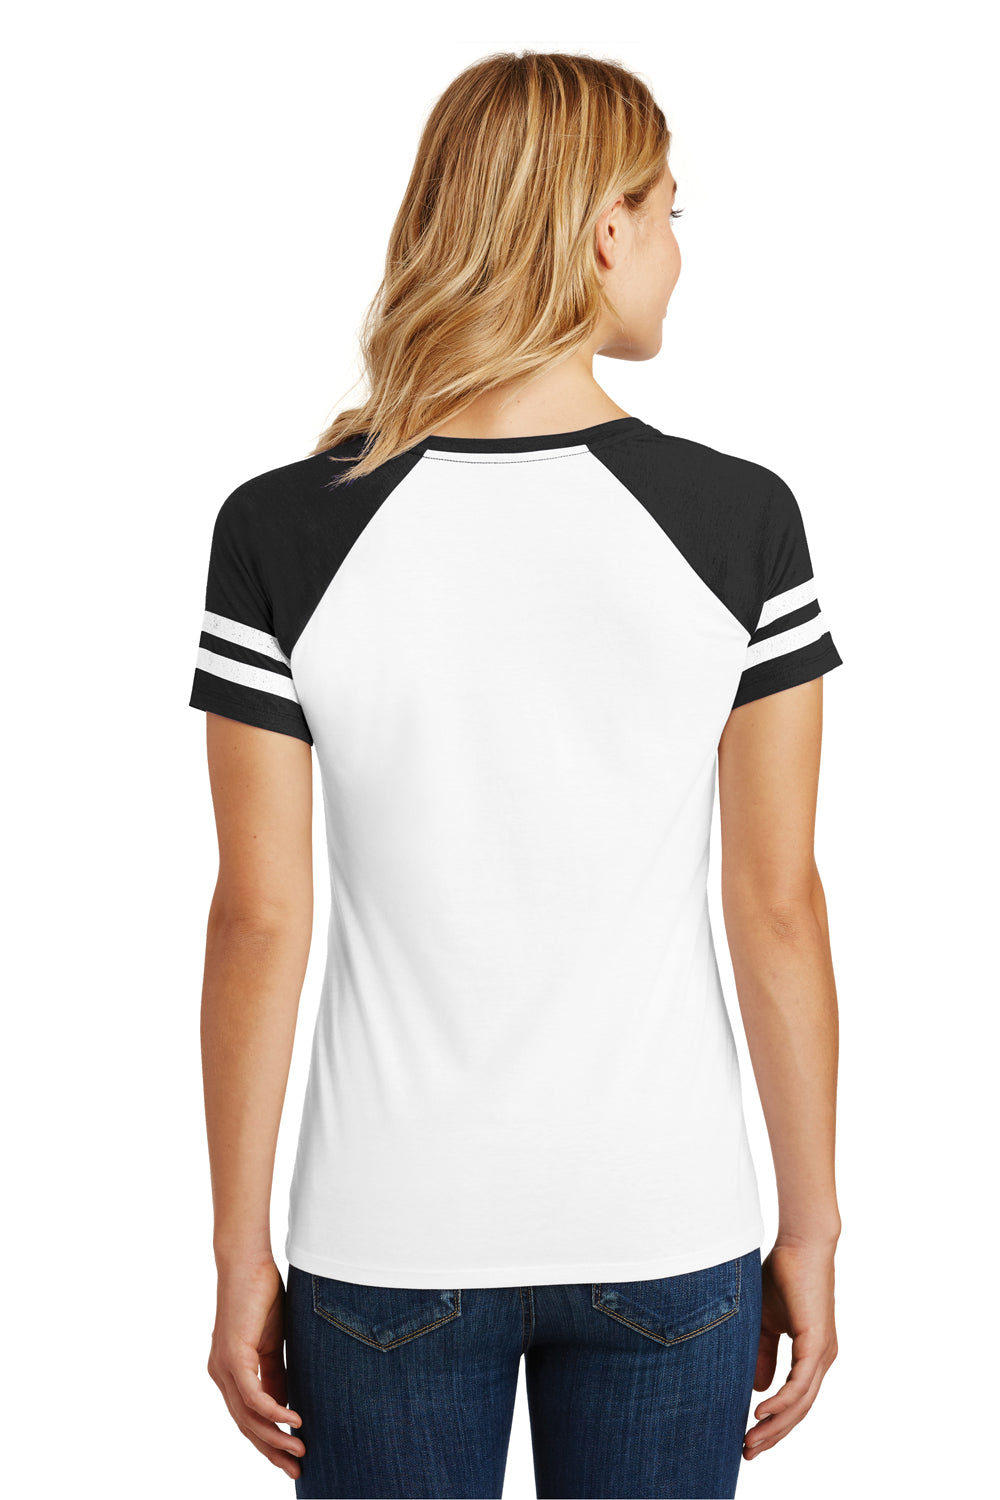 District DM476 Womens Game Short Sleeve V-Neck T-Shirt White/Black Back